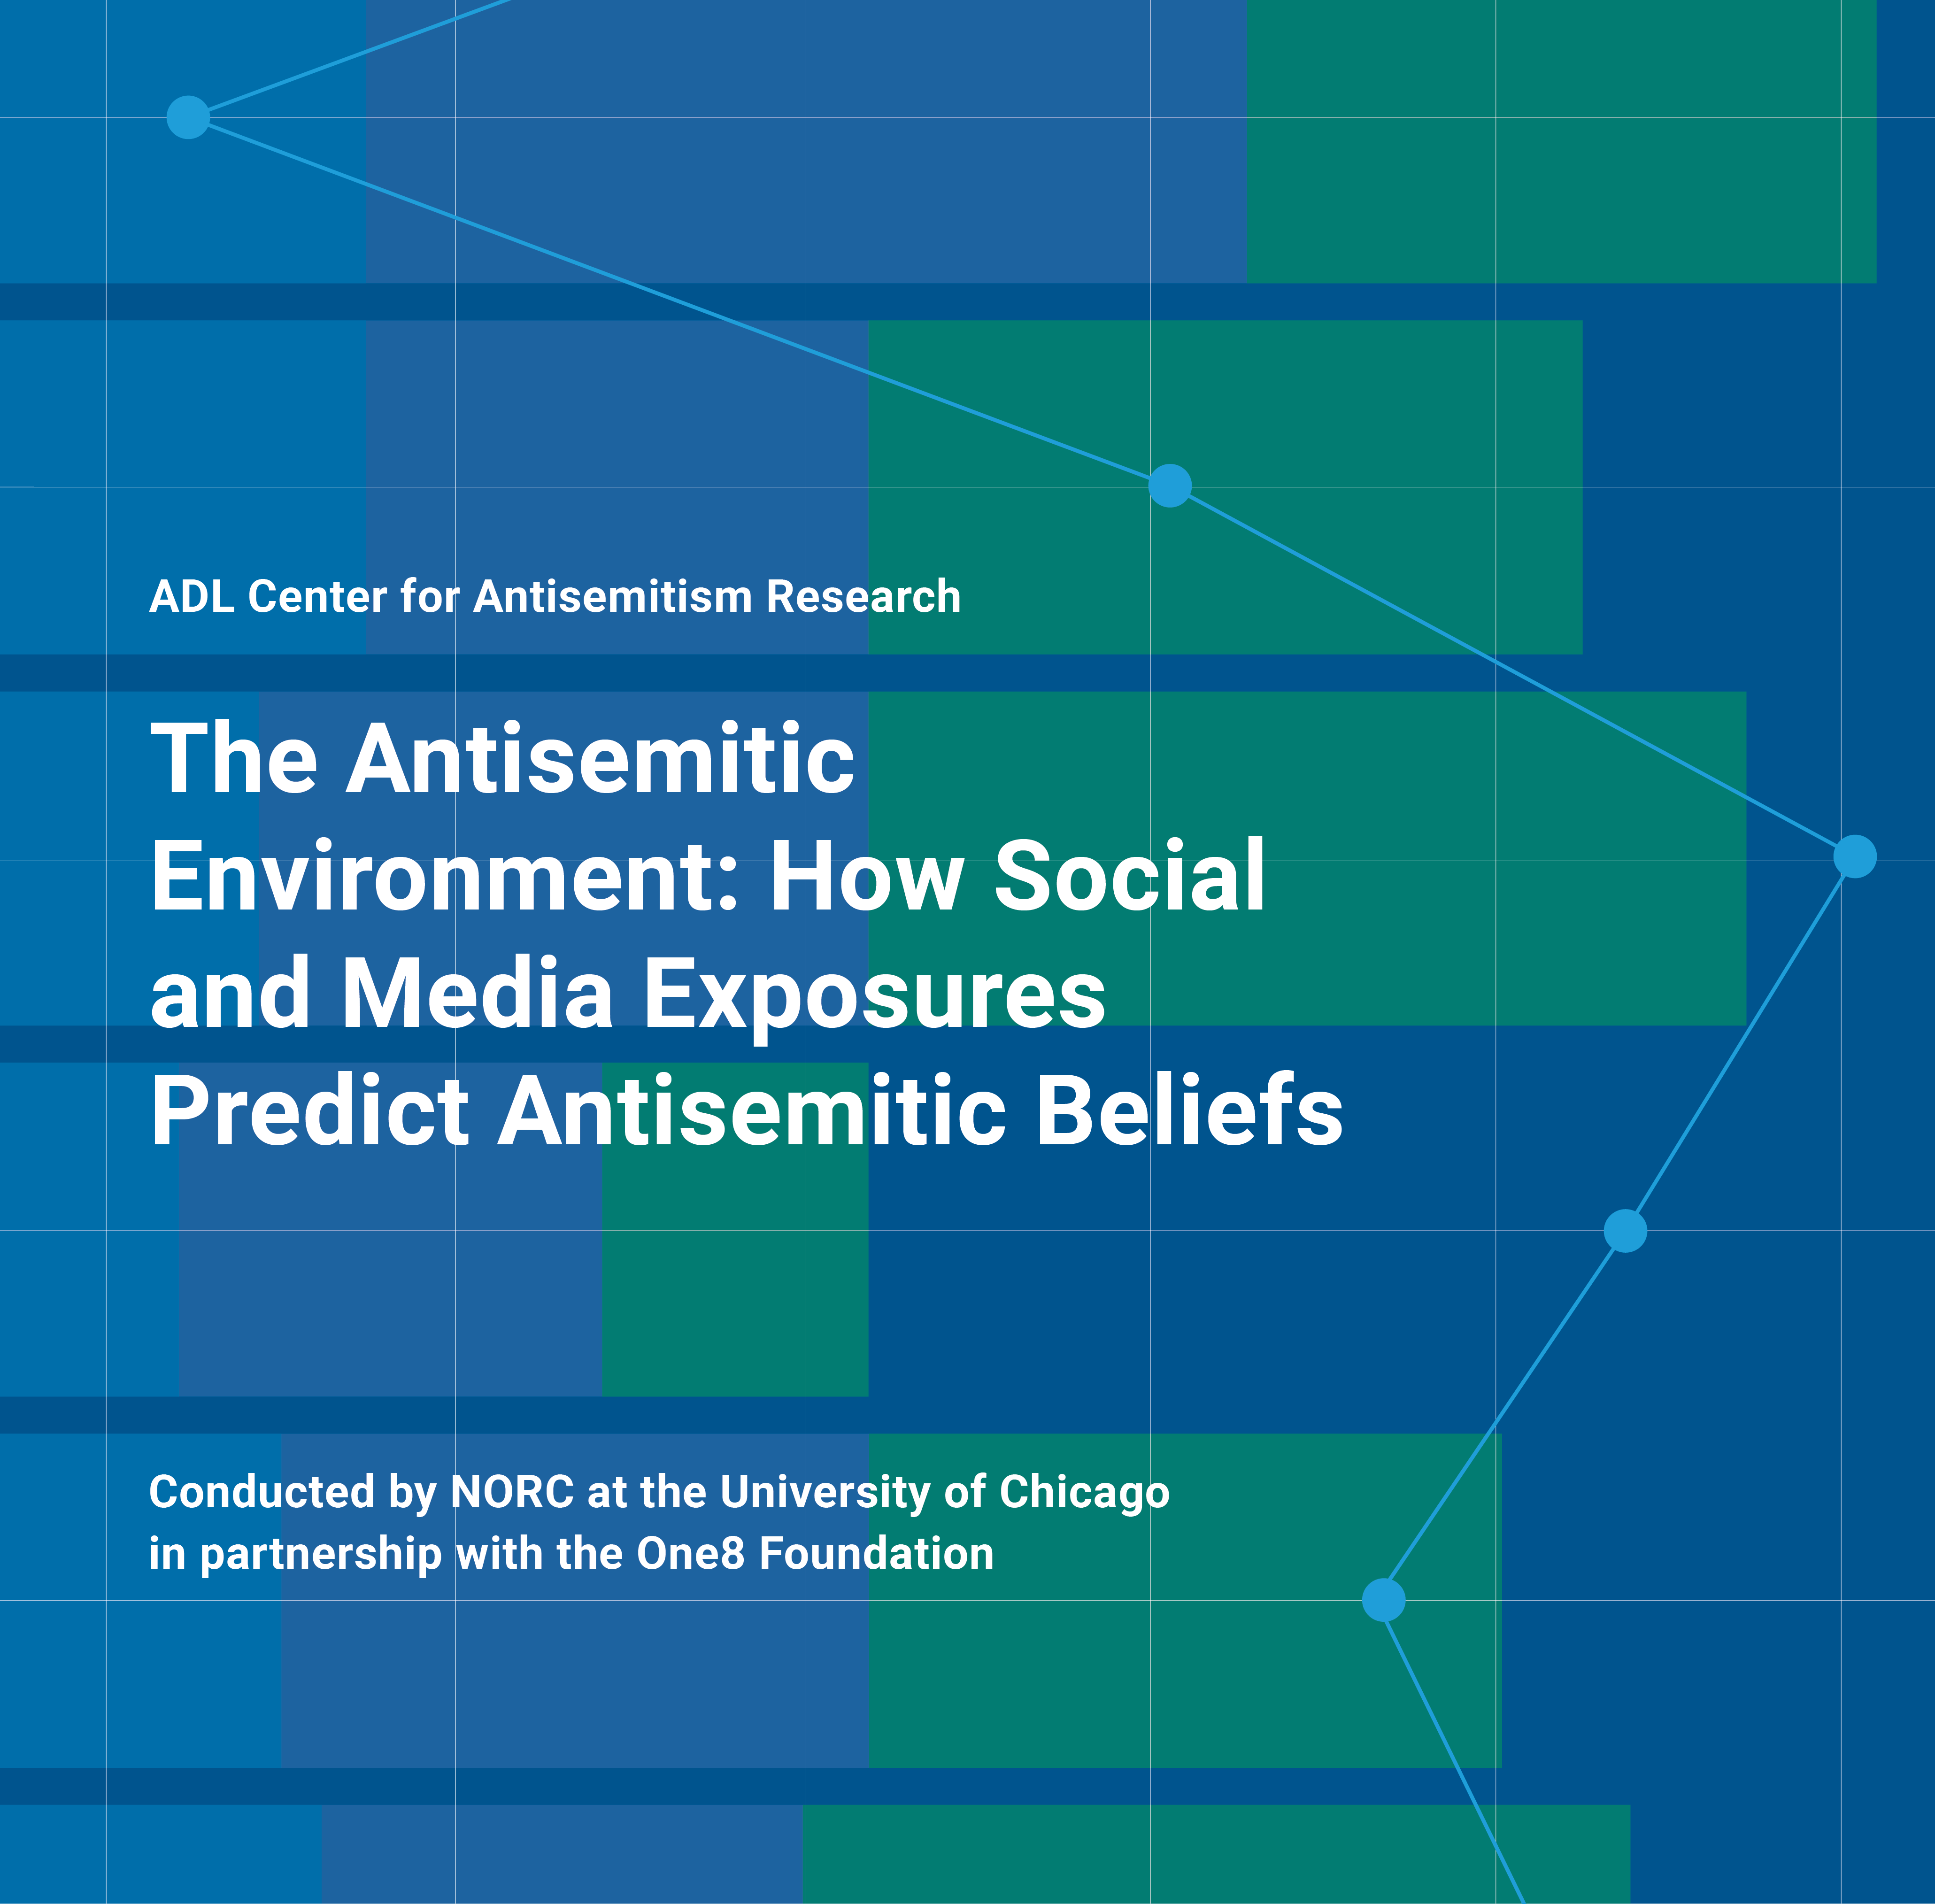 ADL's Antisemitic Attitudes in America Survey Issue No. 3